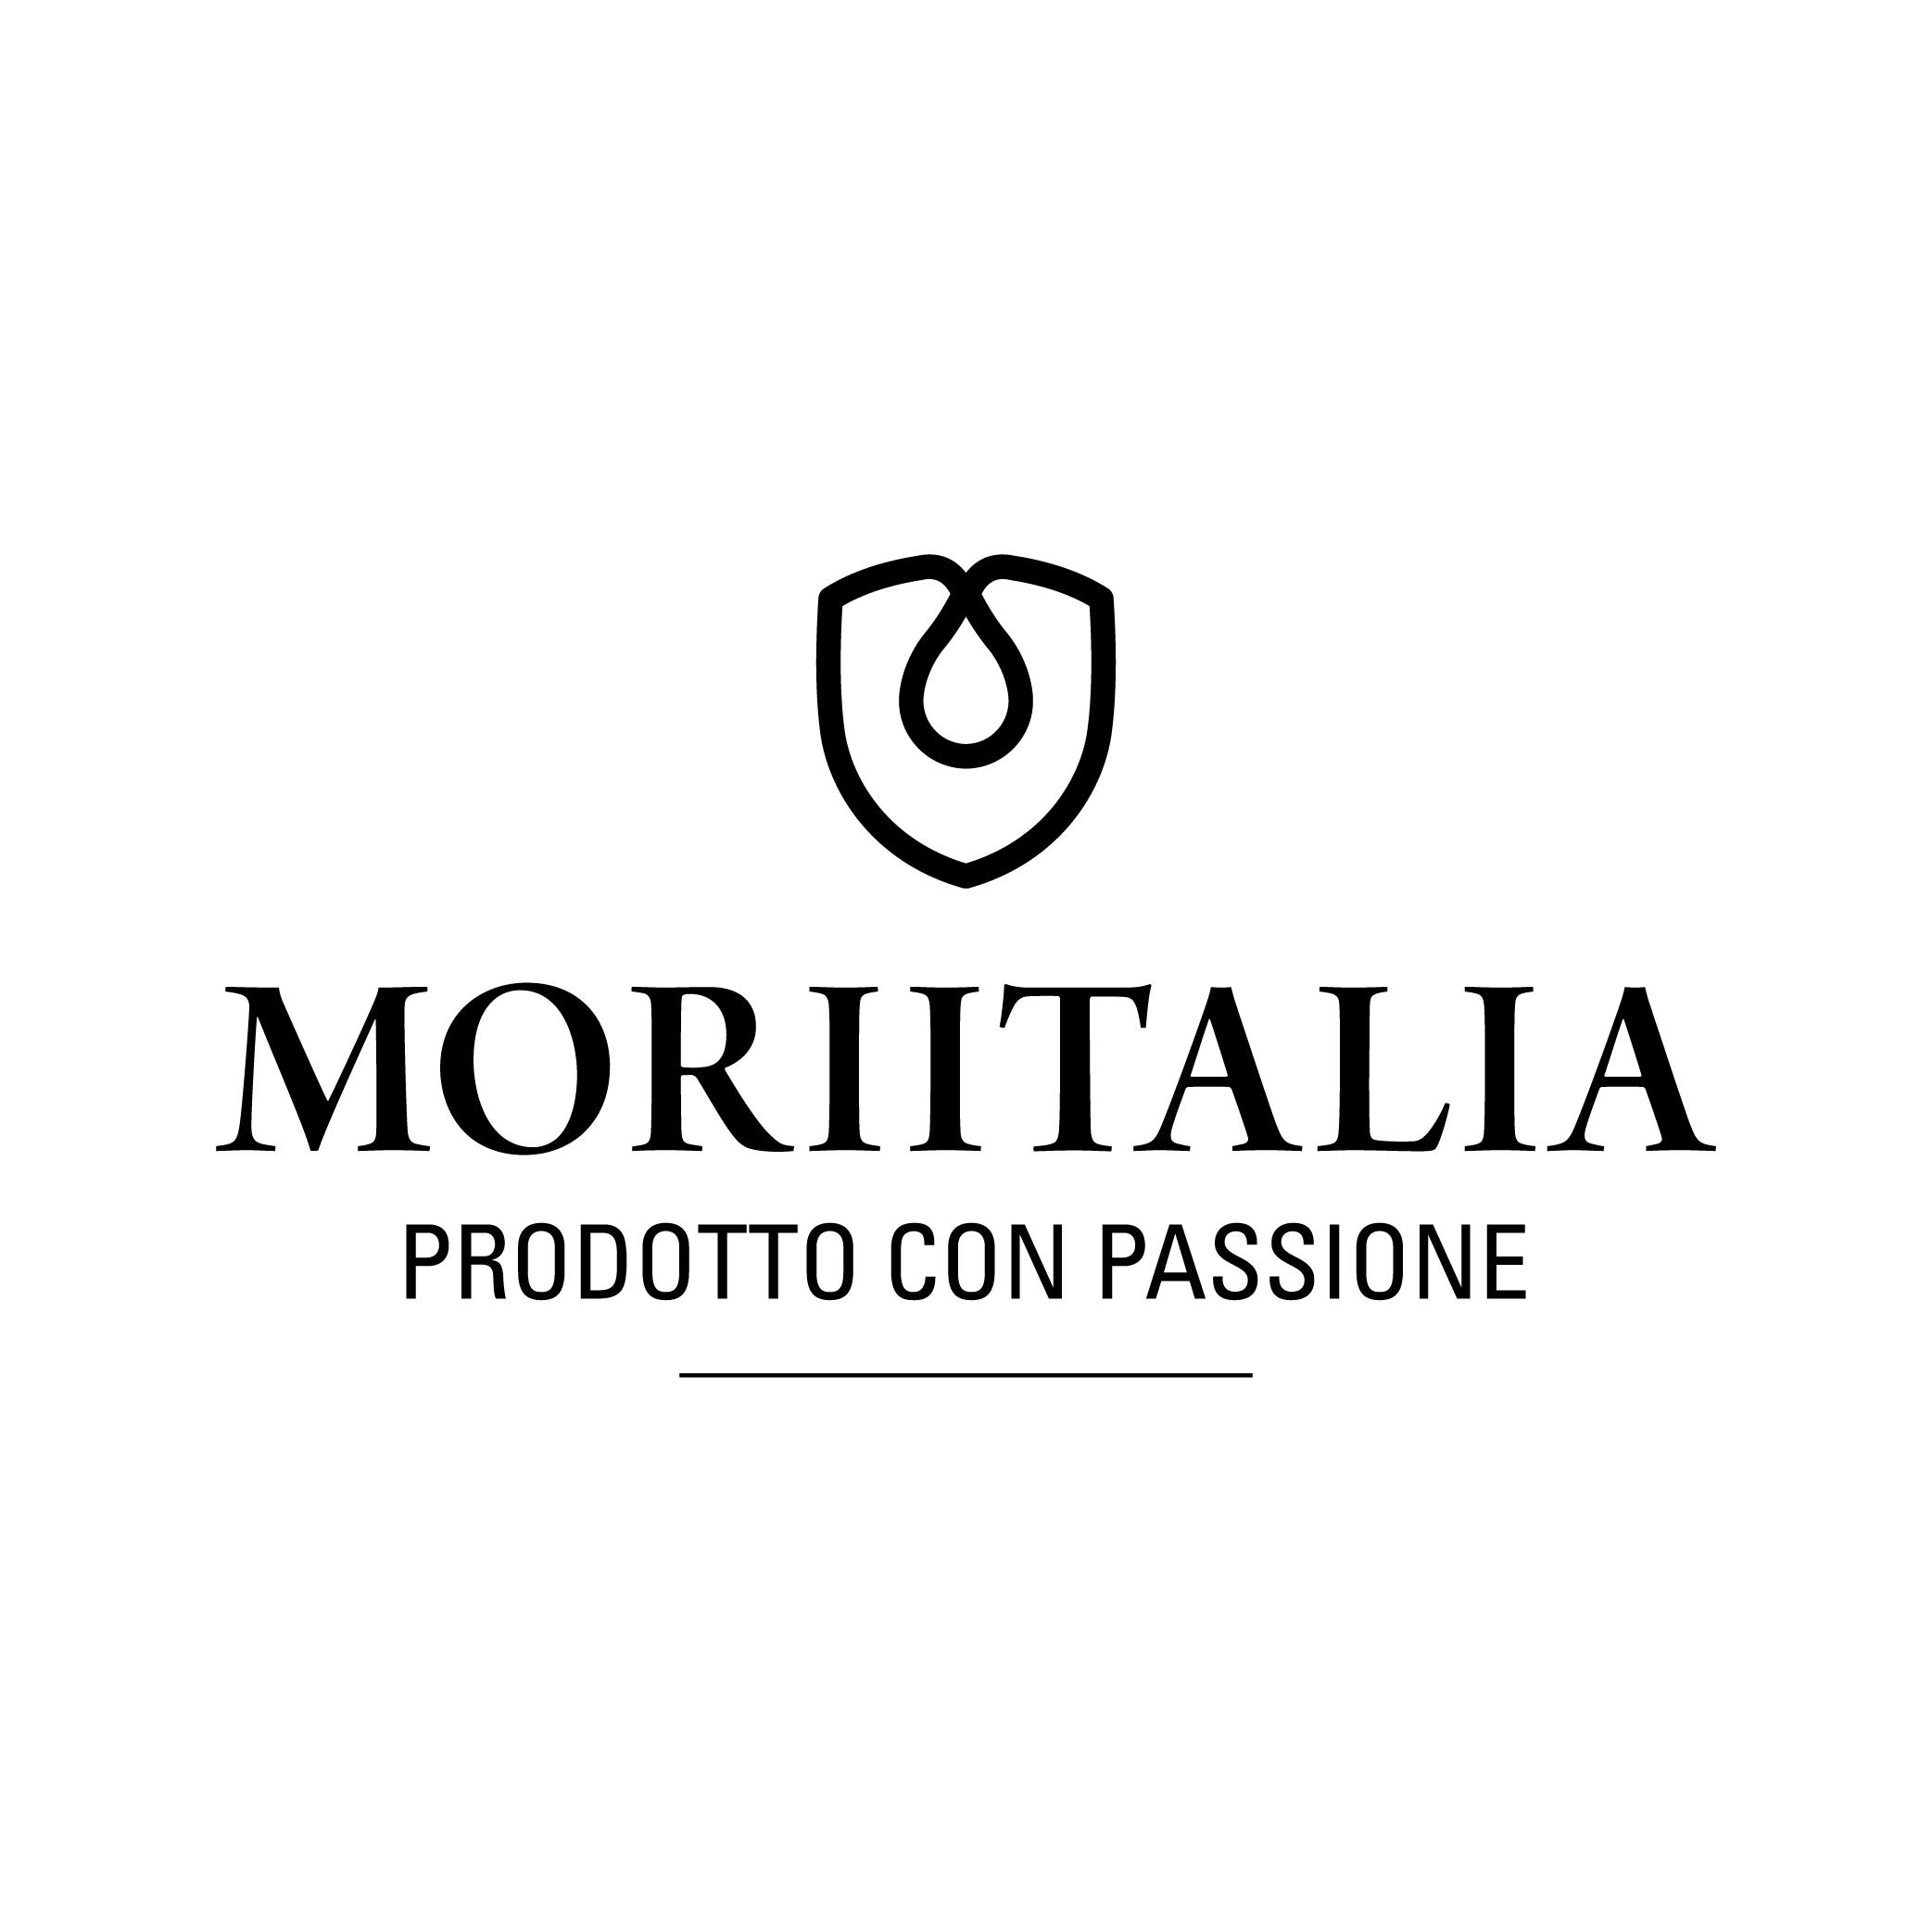 Moriitalia